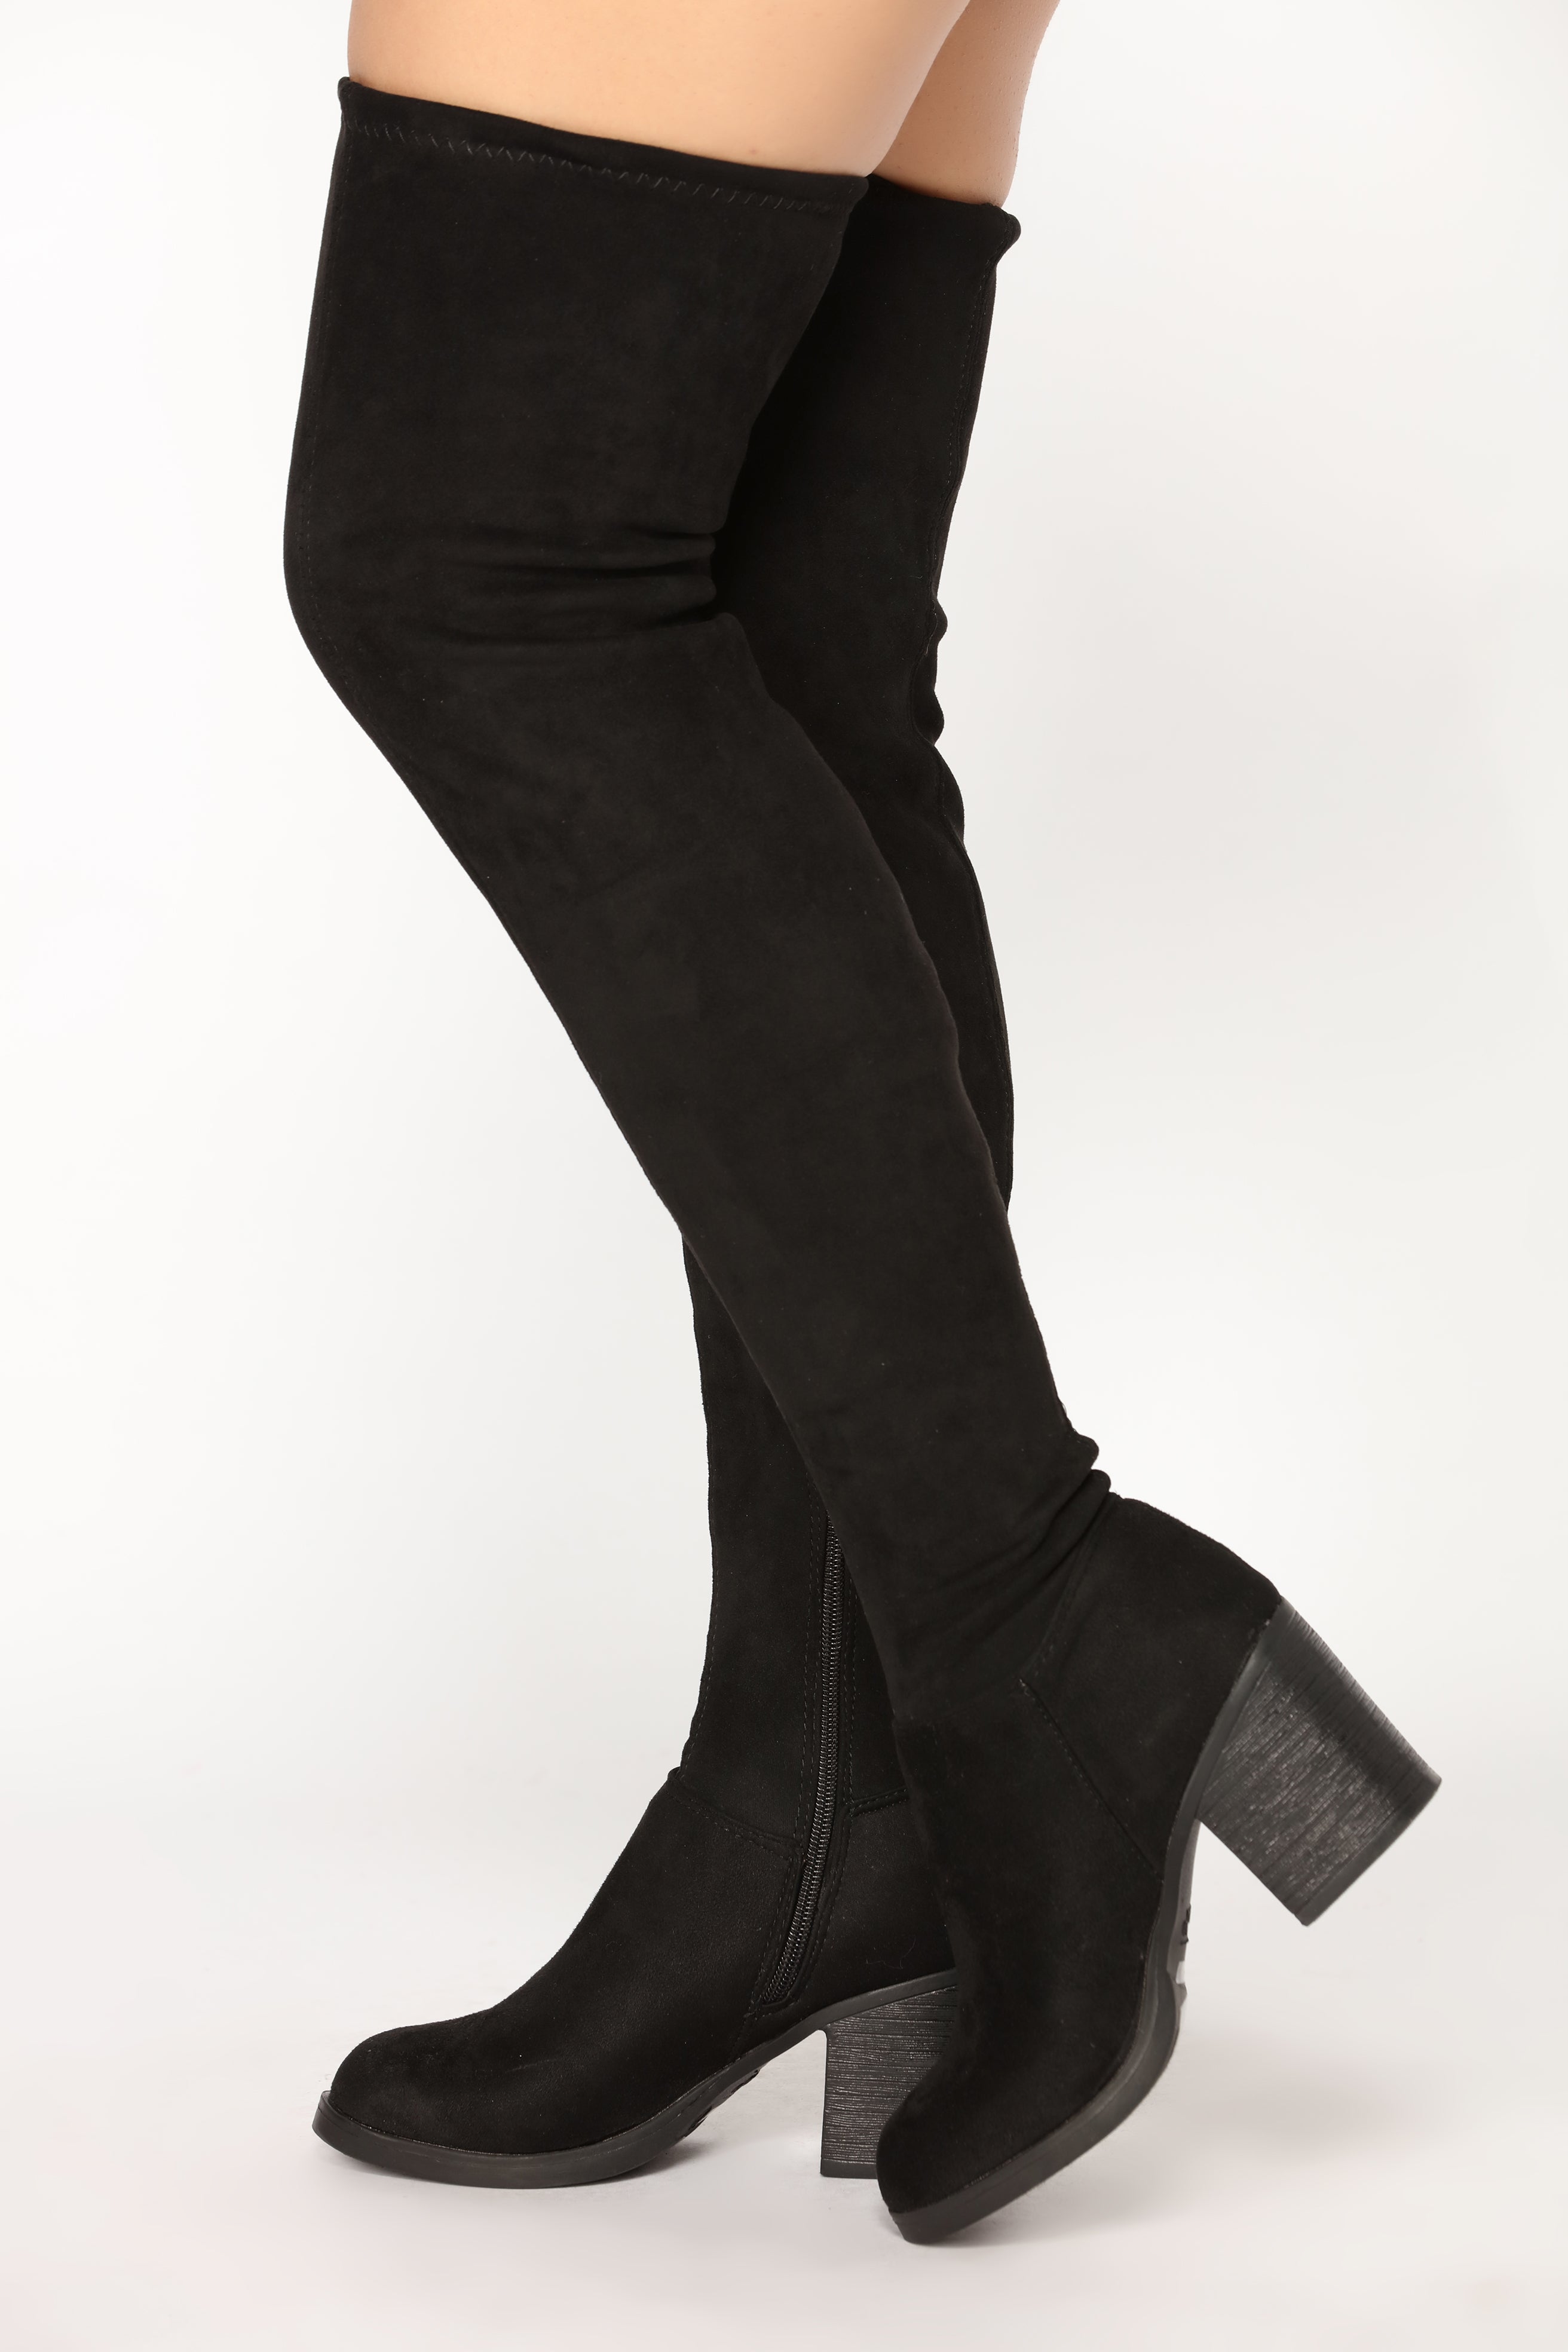 Callie Thigh High Boot - Black 